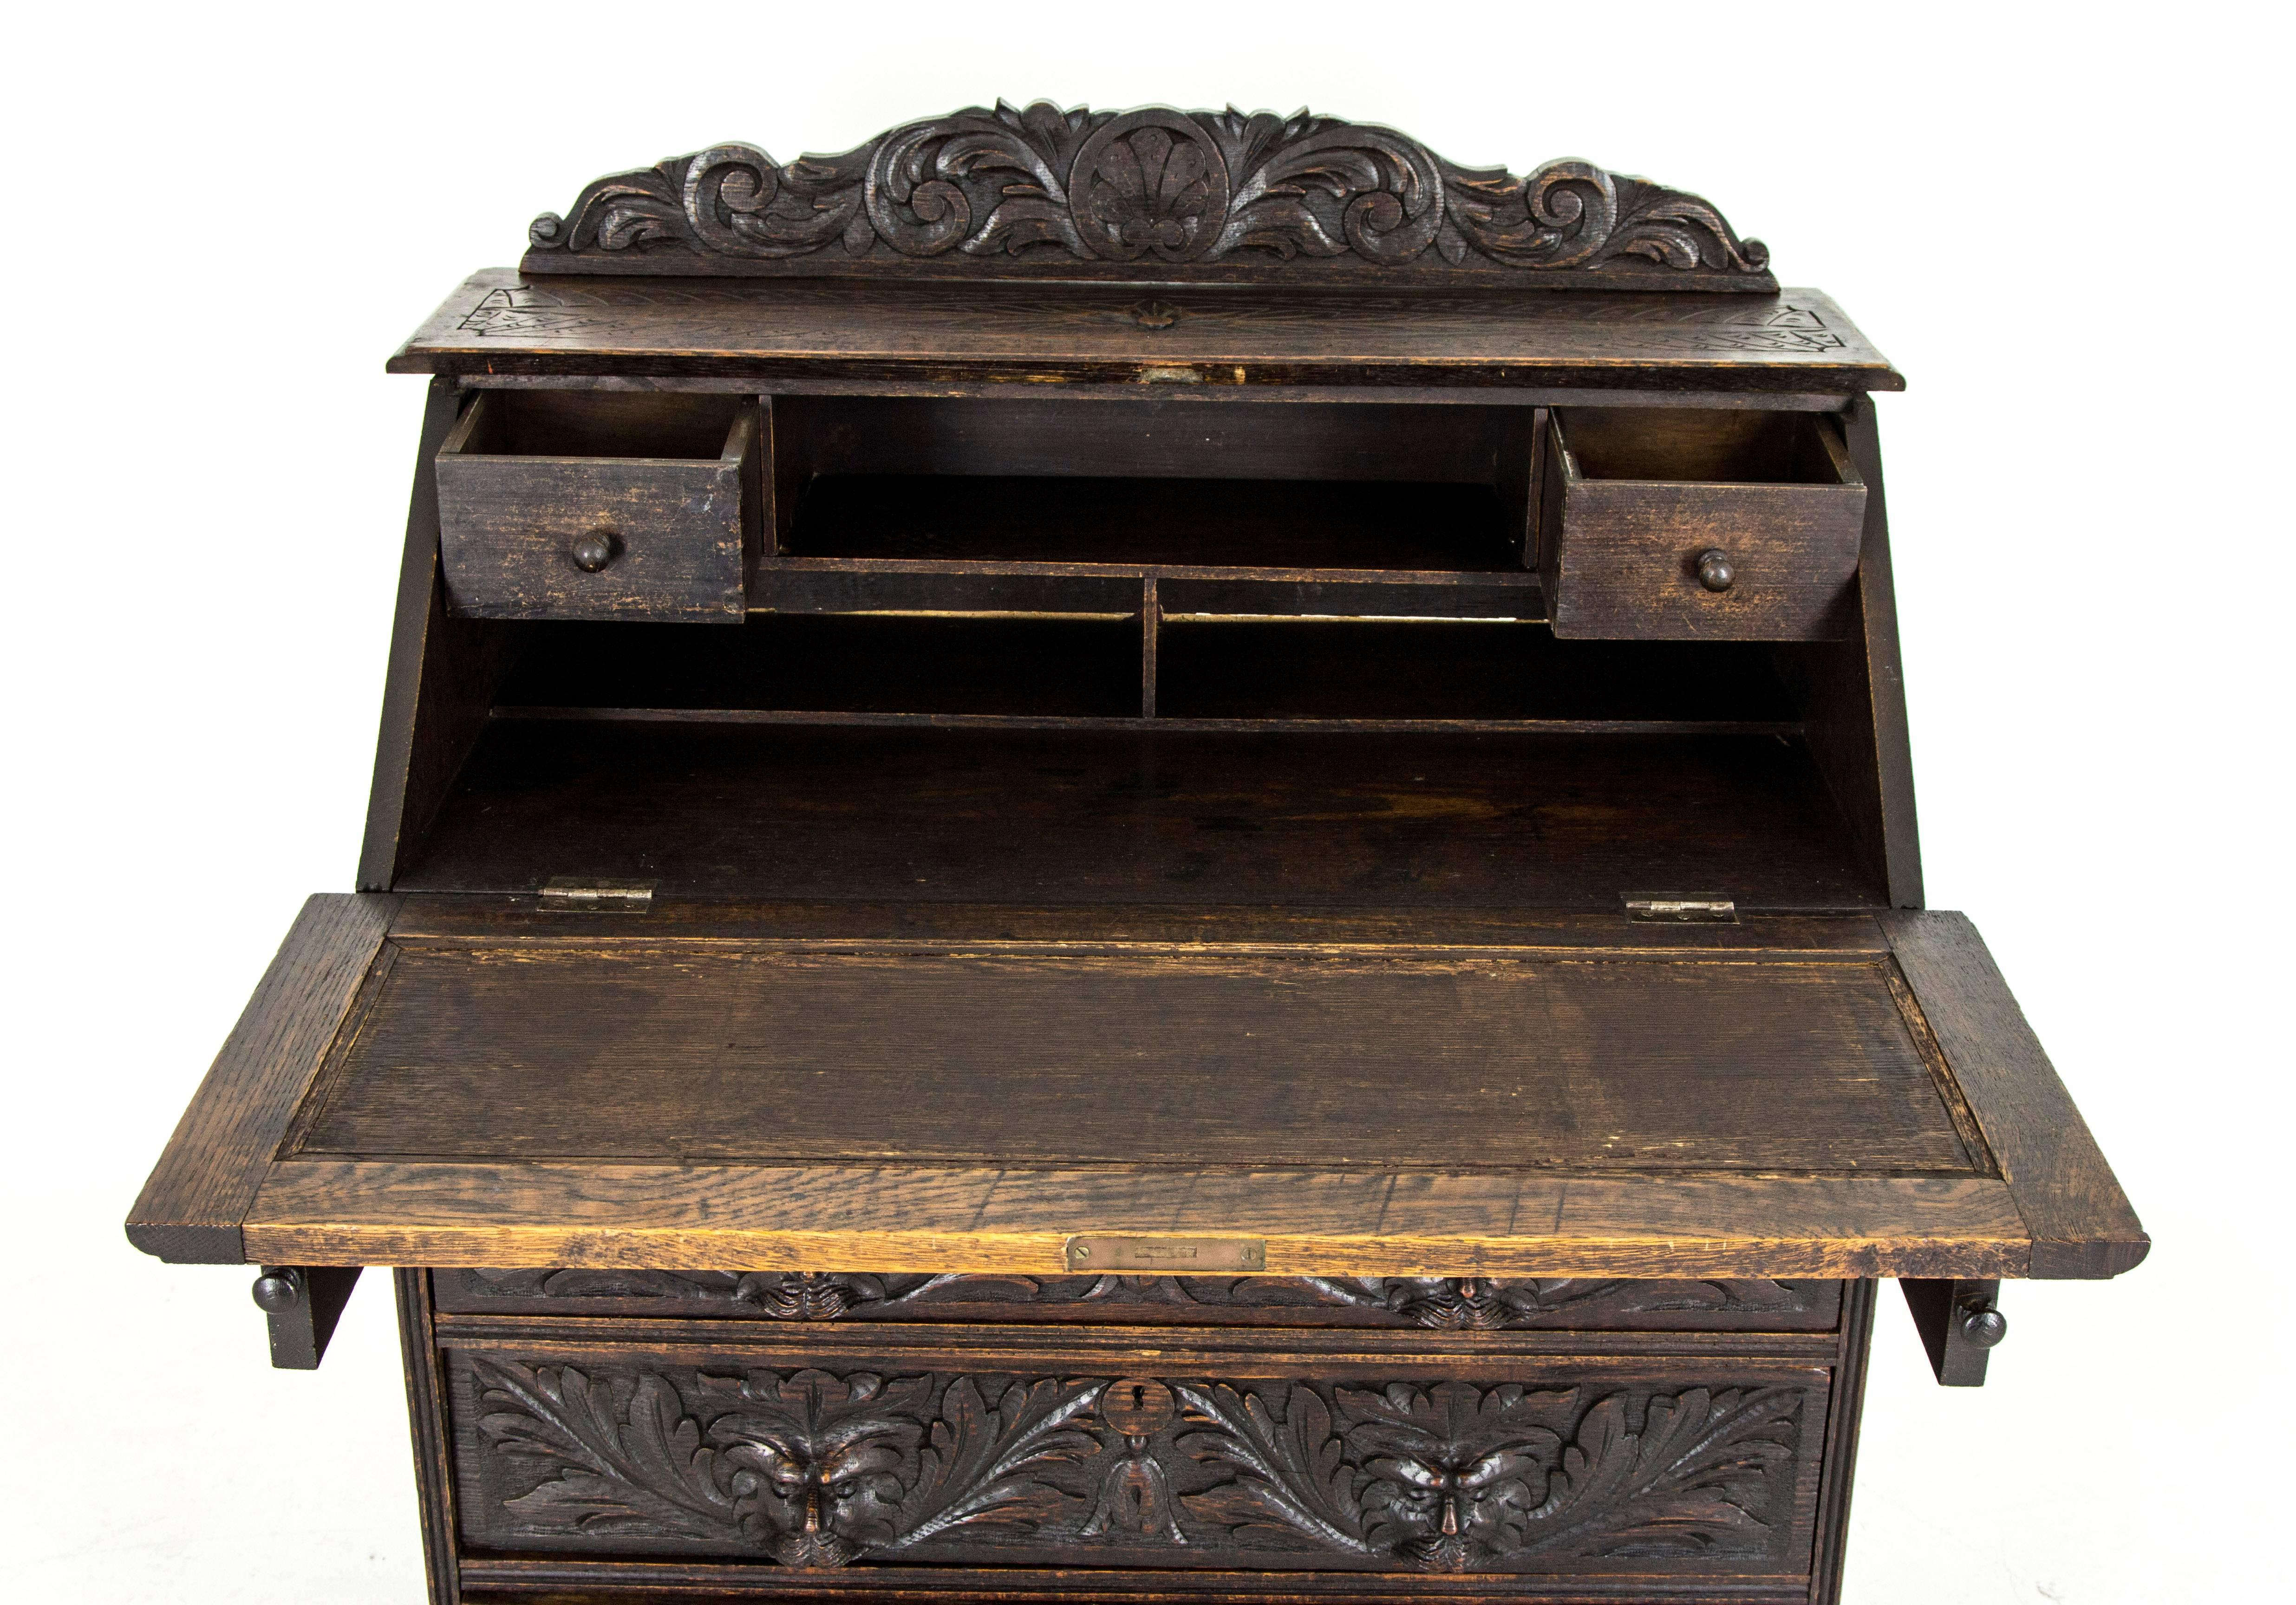 Hand-Crafted Antique Scottish Gothic Carved Oak Slant Front Desk, Bureau